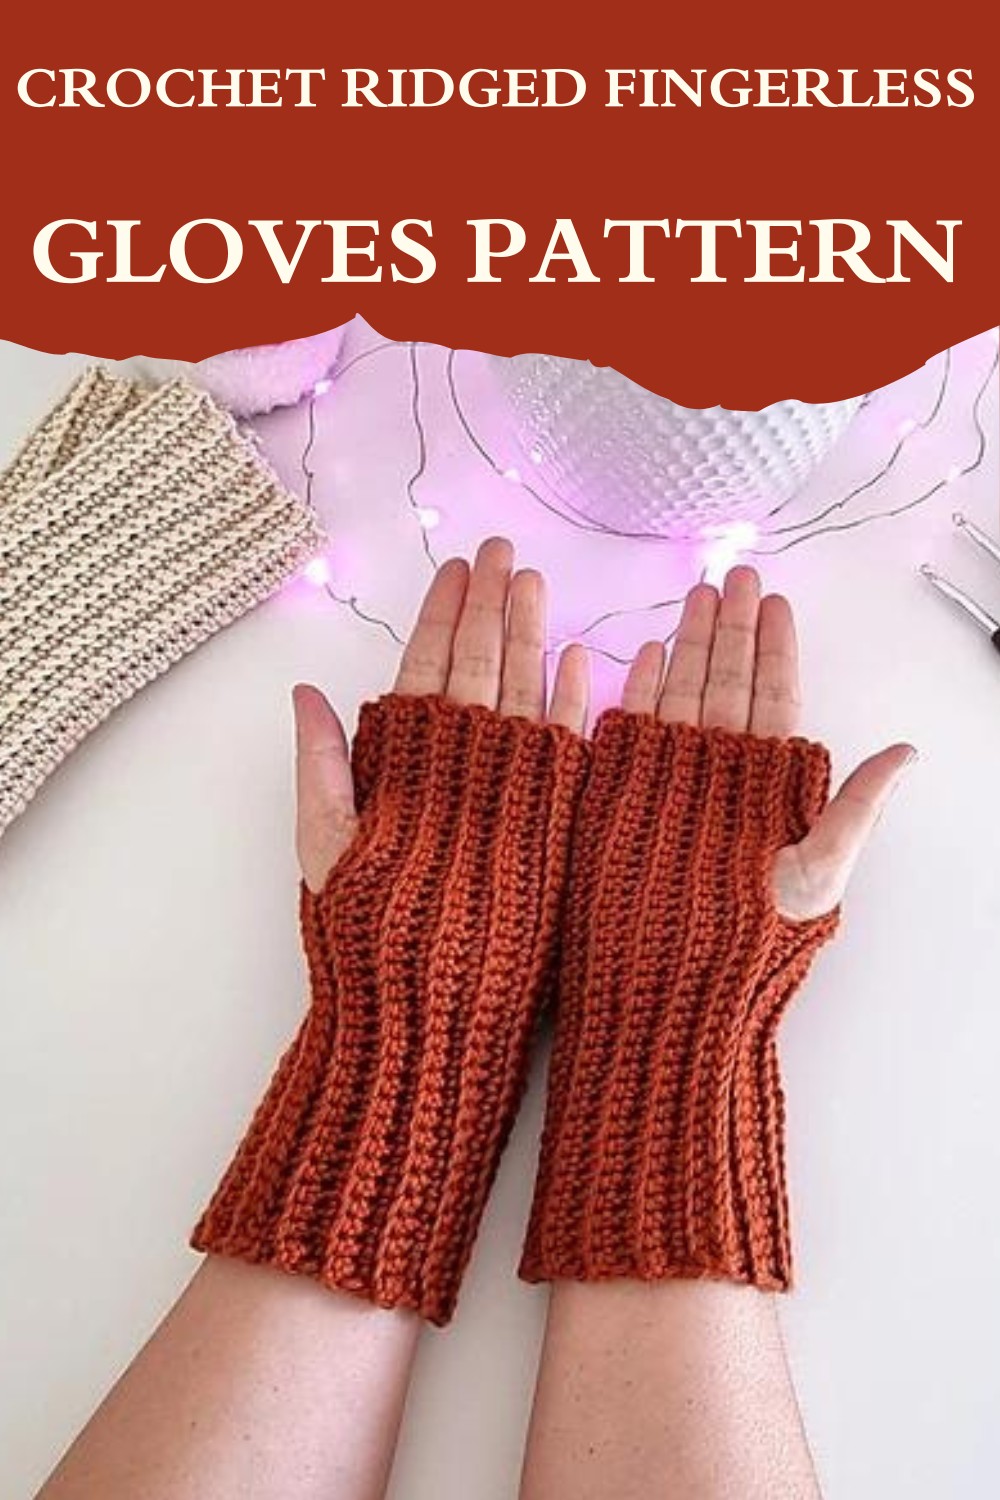 Crochet Ridged Fingerless Gloves Pattern